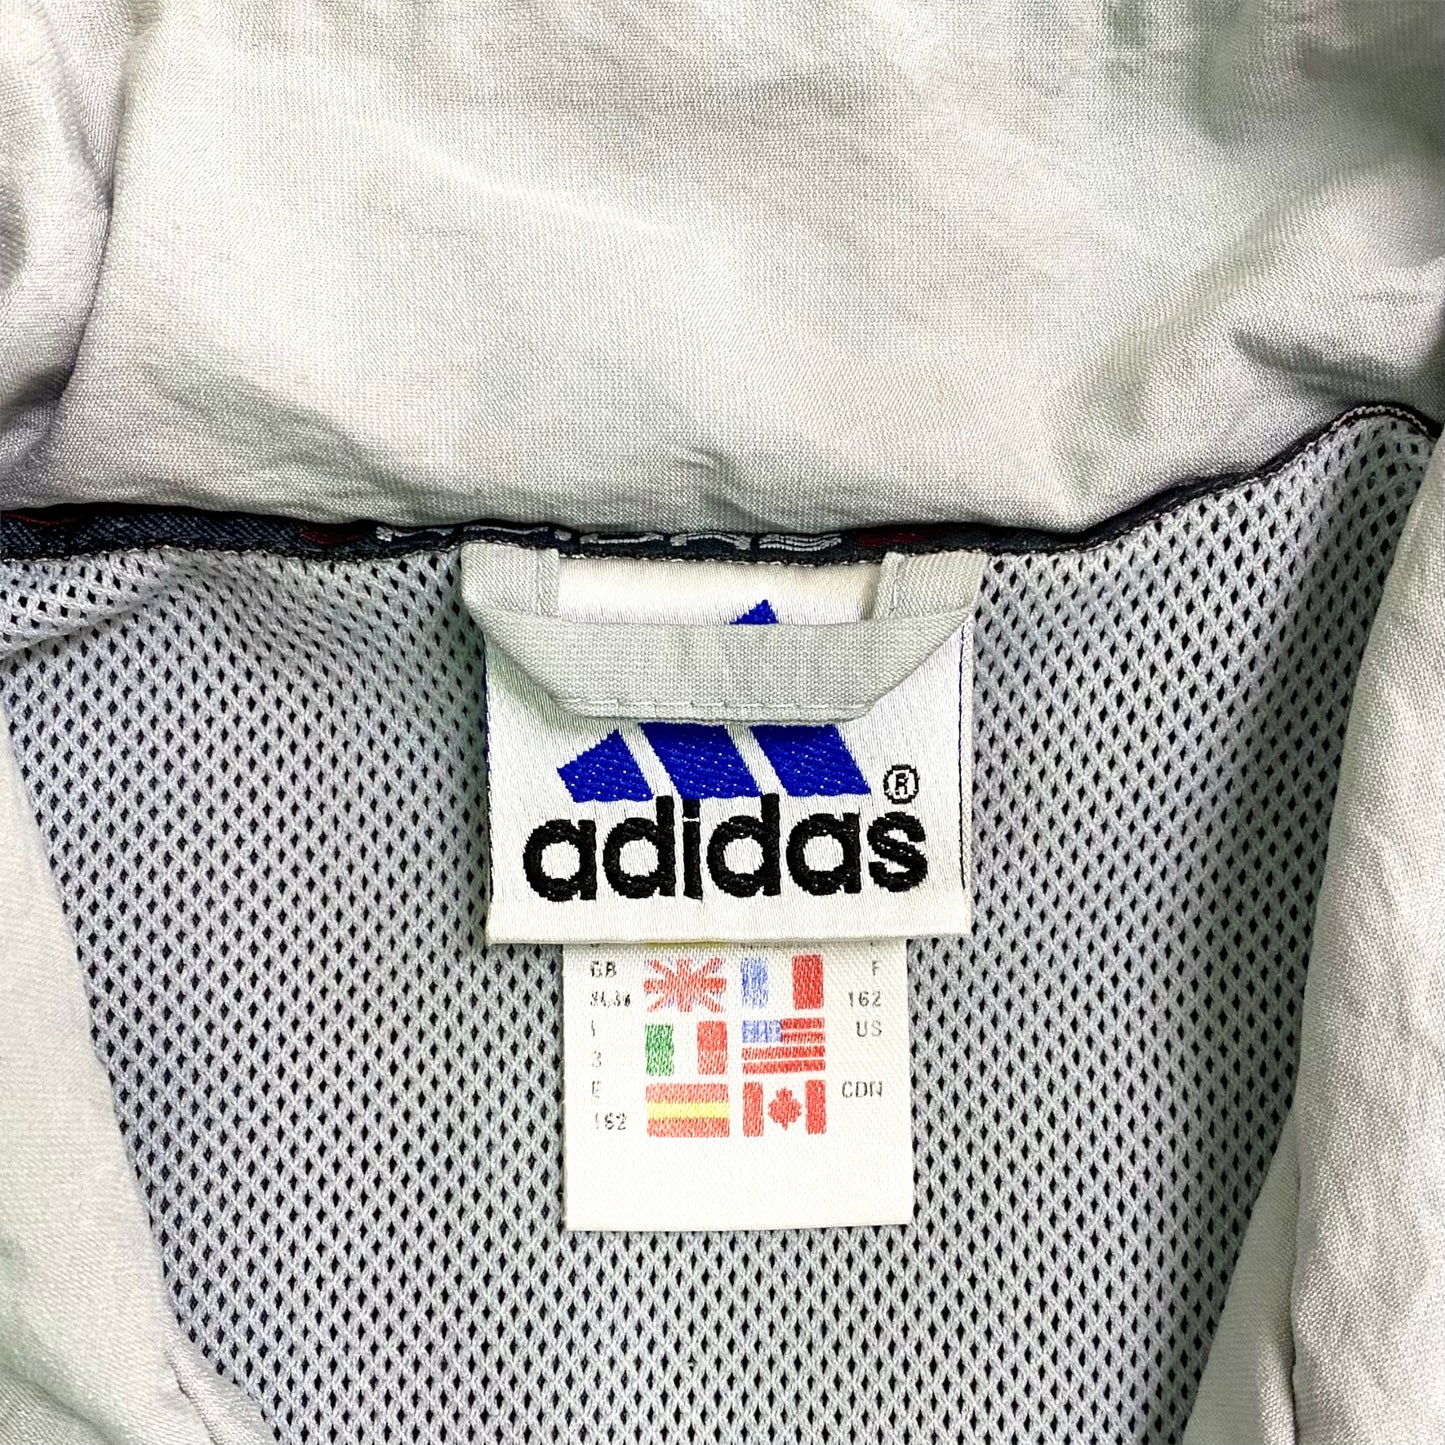 90's "adidas" Nylon jacket